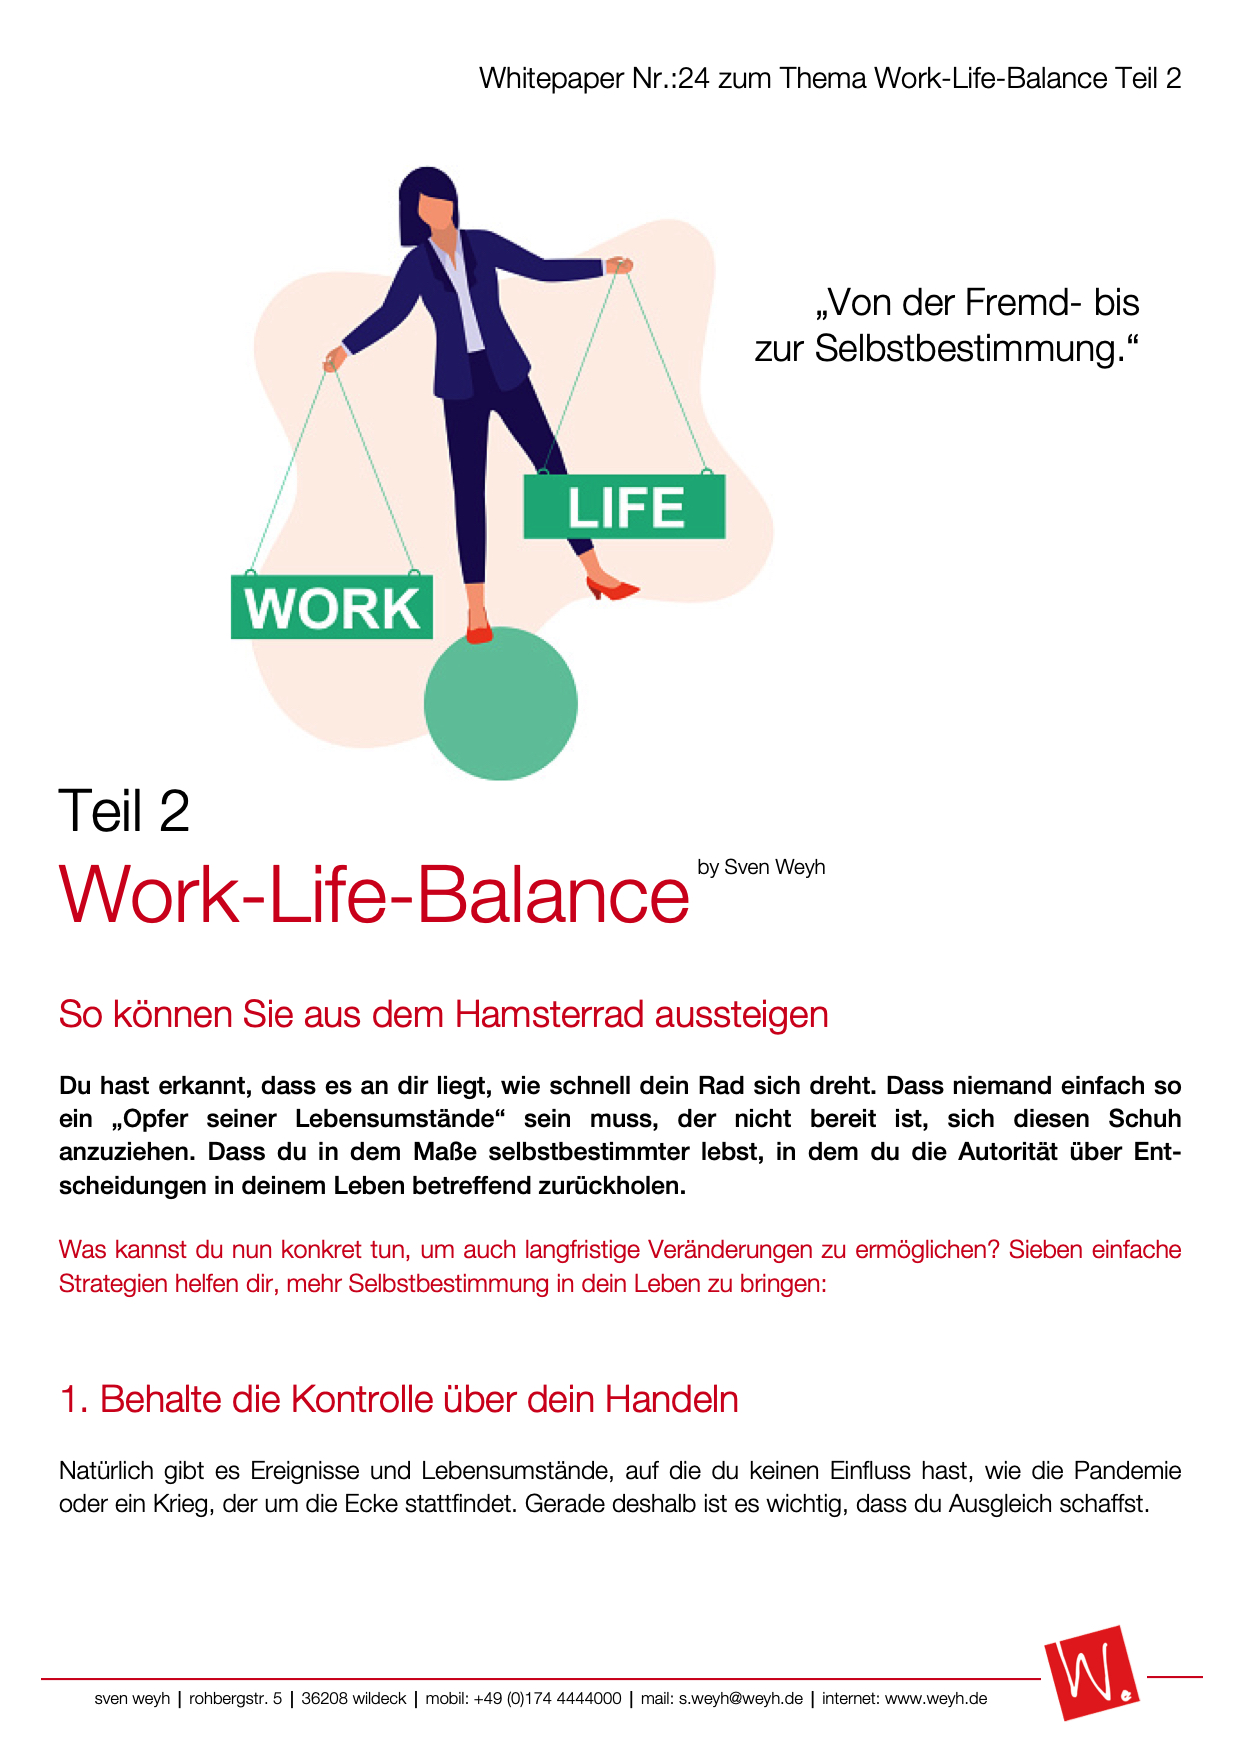 Whitepaper Sven Weyh Work-Life-Balance